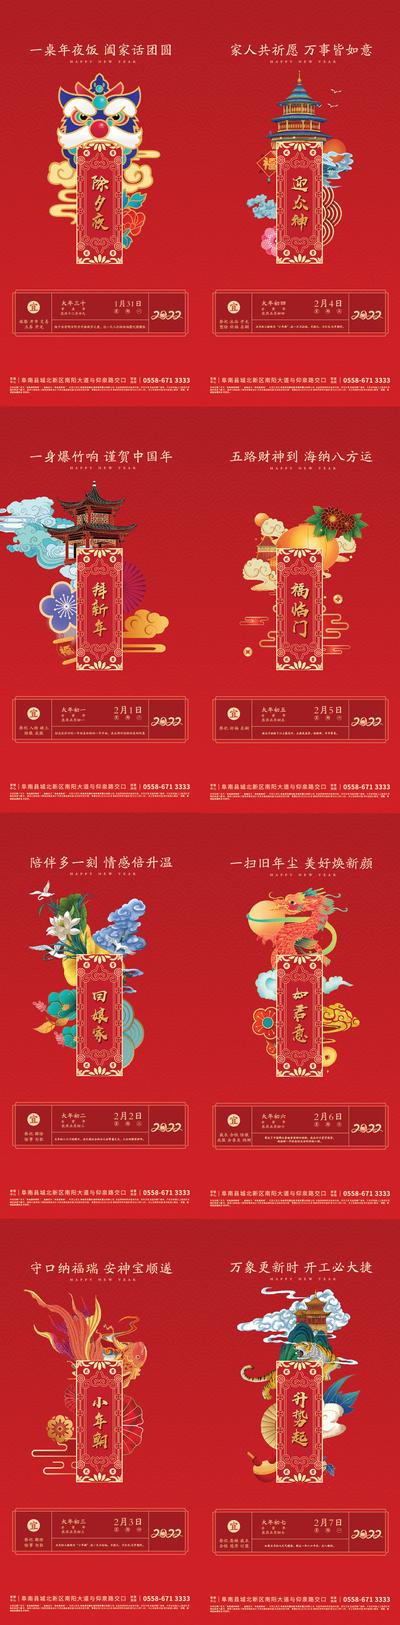 南门网 海报 中国传统节日 房地产 春节 除夕 习俗 剪纸 插画 系列